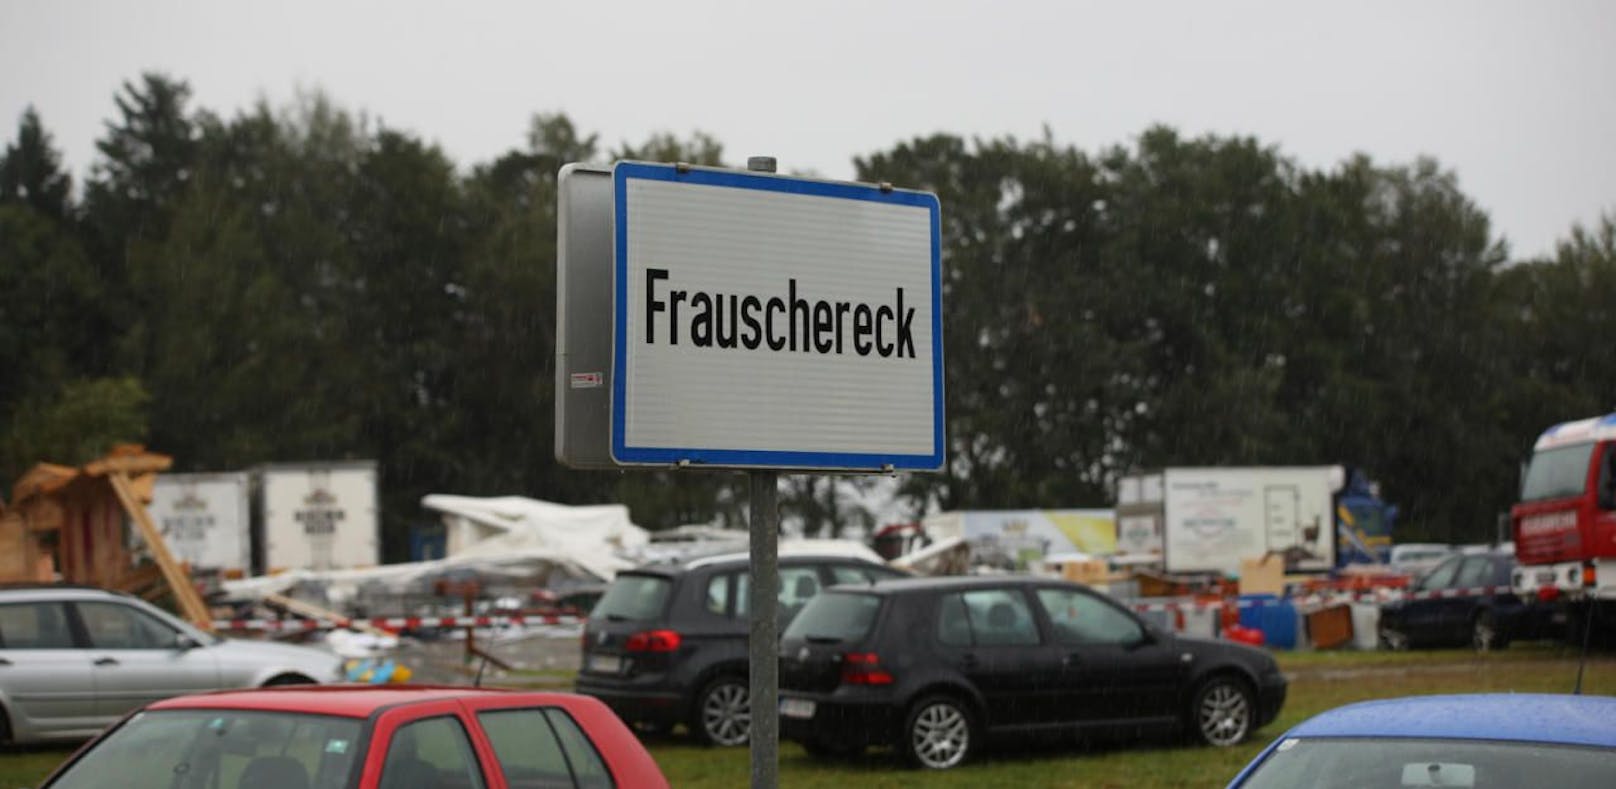 Hätte das Zelt-Drama in Frauschereck verhindert werden können?